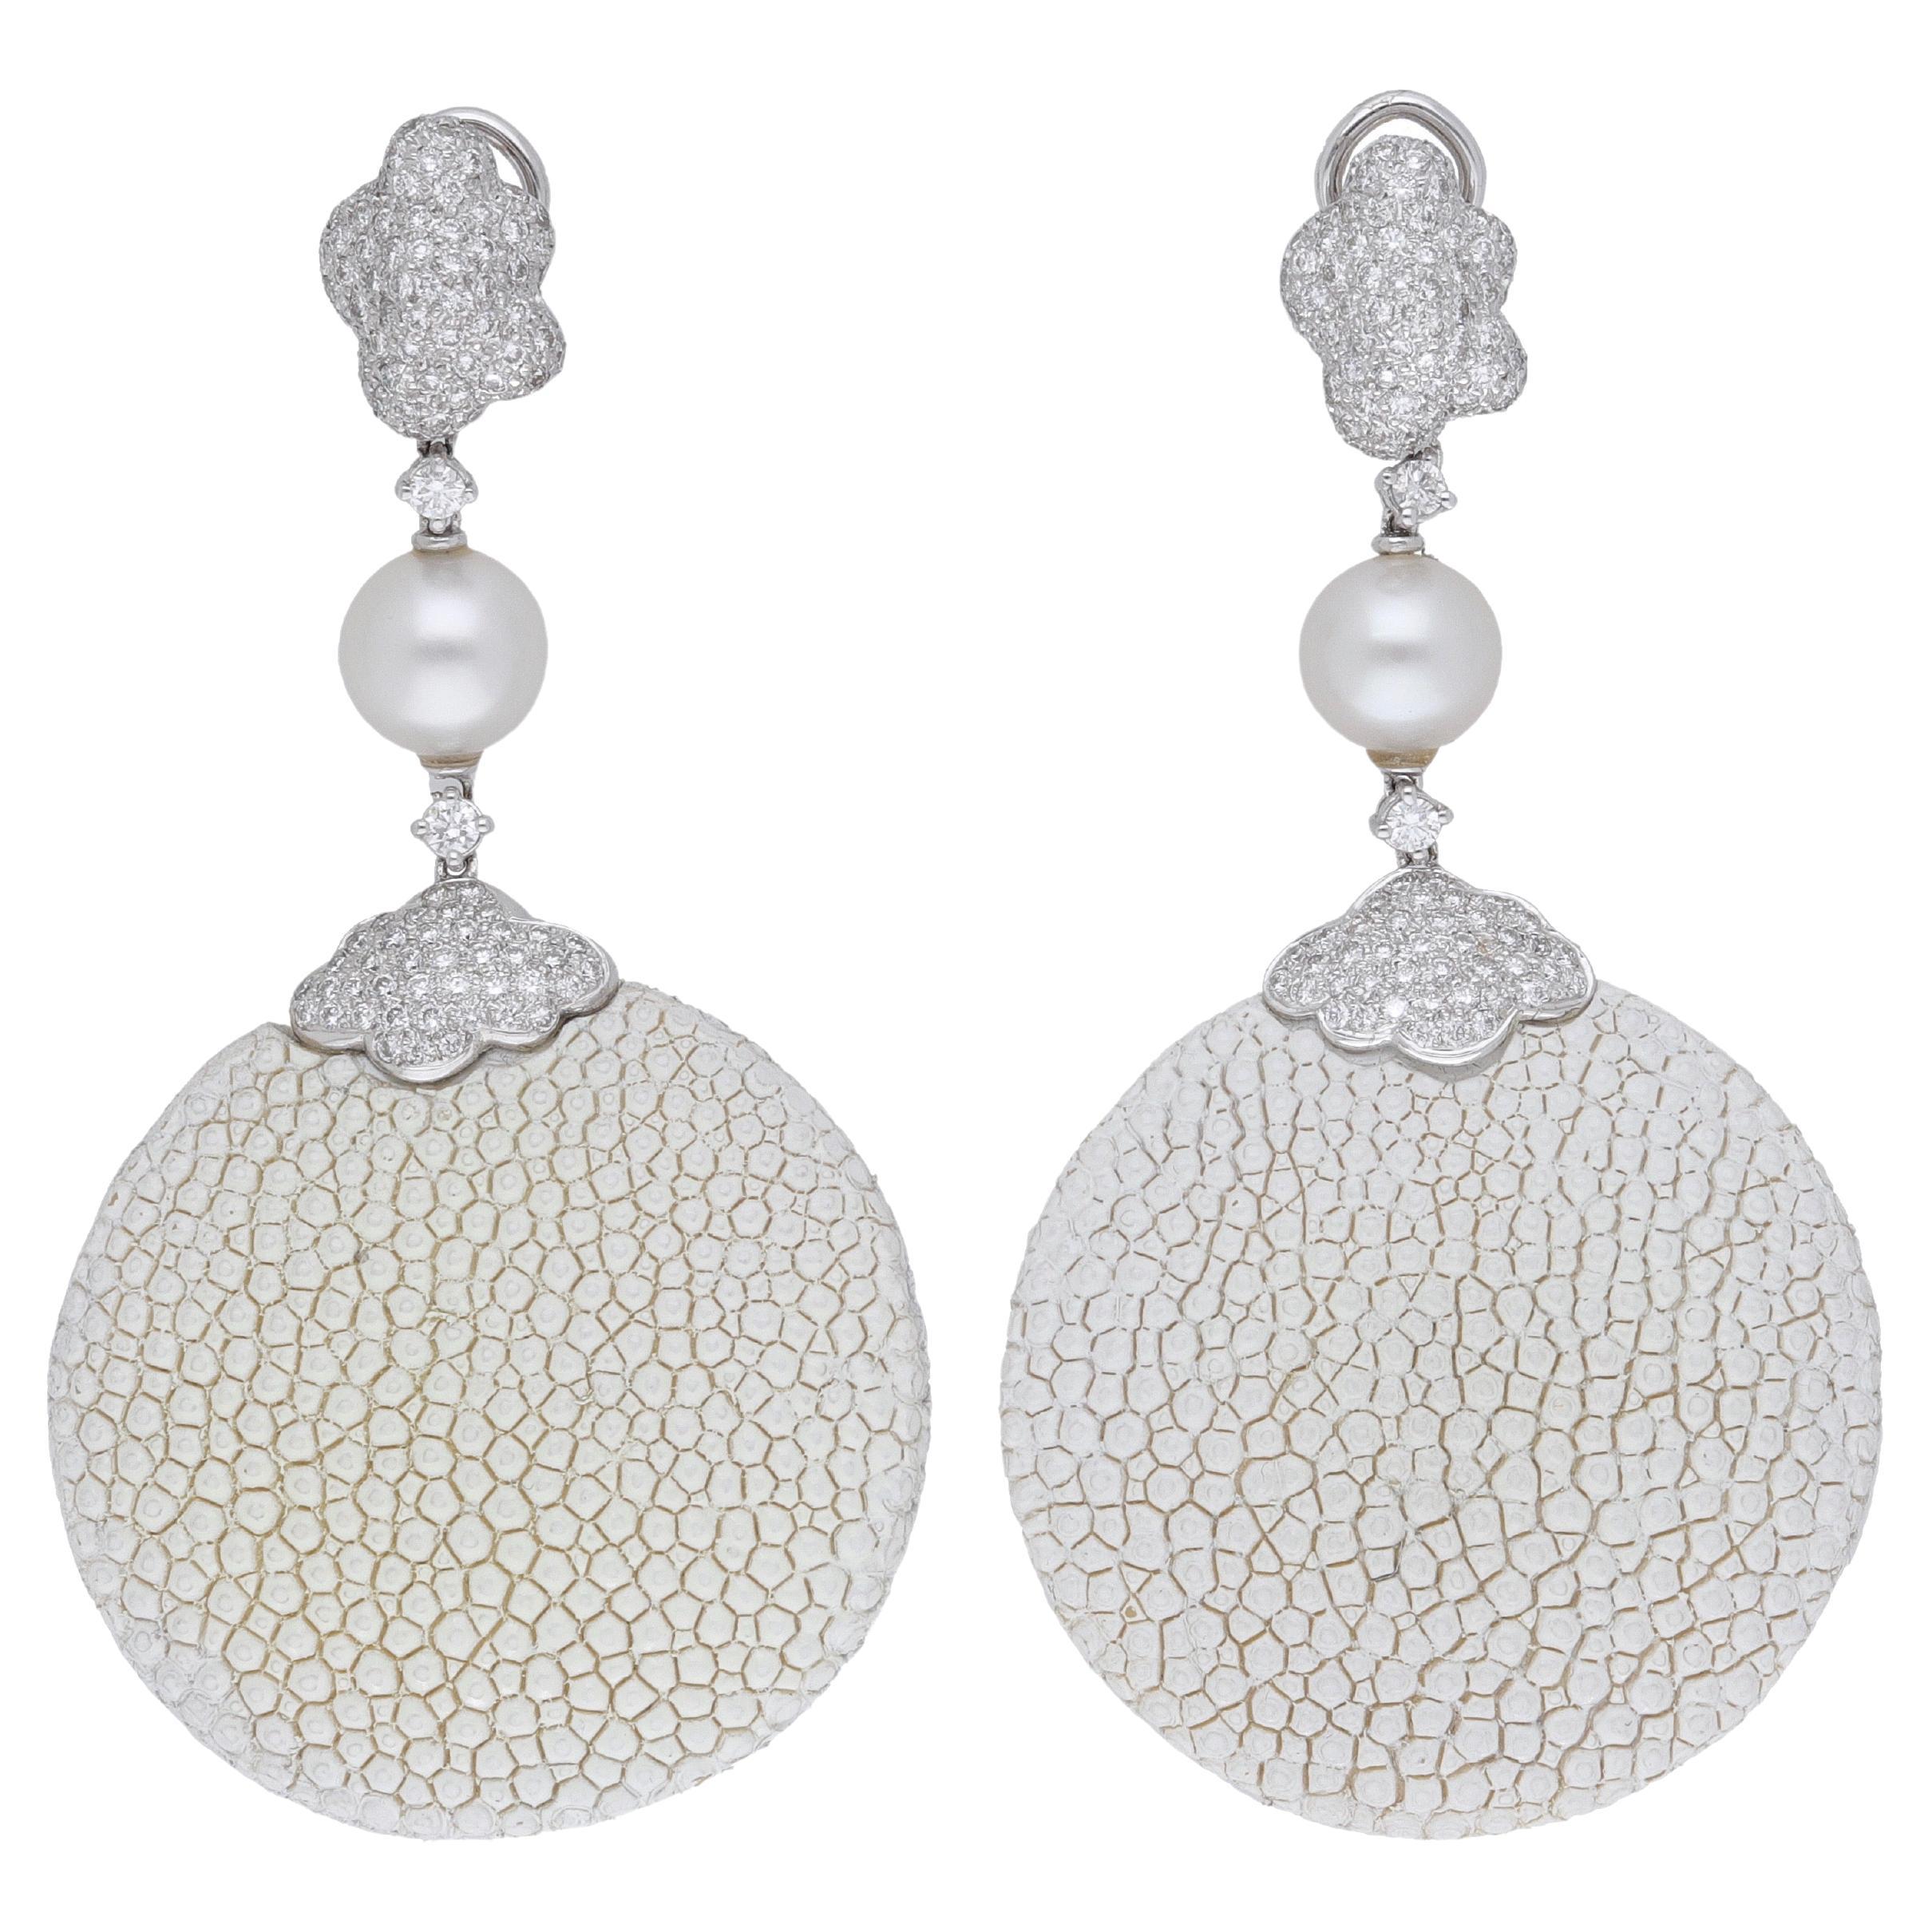 Boucles d'oreilles chandelier en or blanc 18 carats diamant perle des mers du sud galuchat